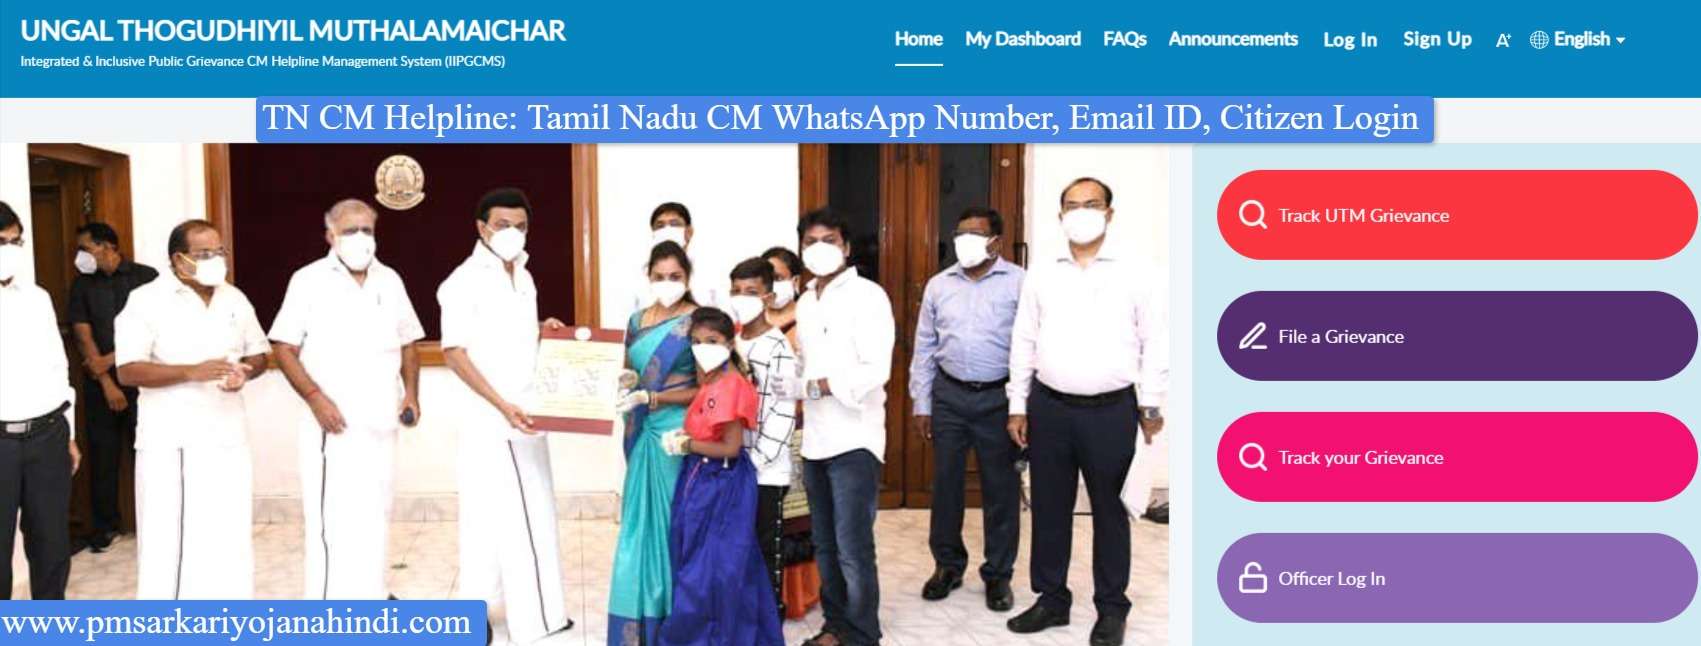 TN CM Helpline - Tamil Nadu CM WhatsApp Number, Email ID, Citizen Login